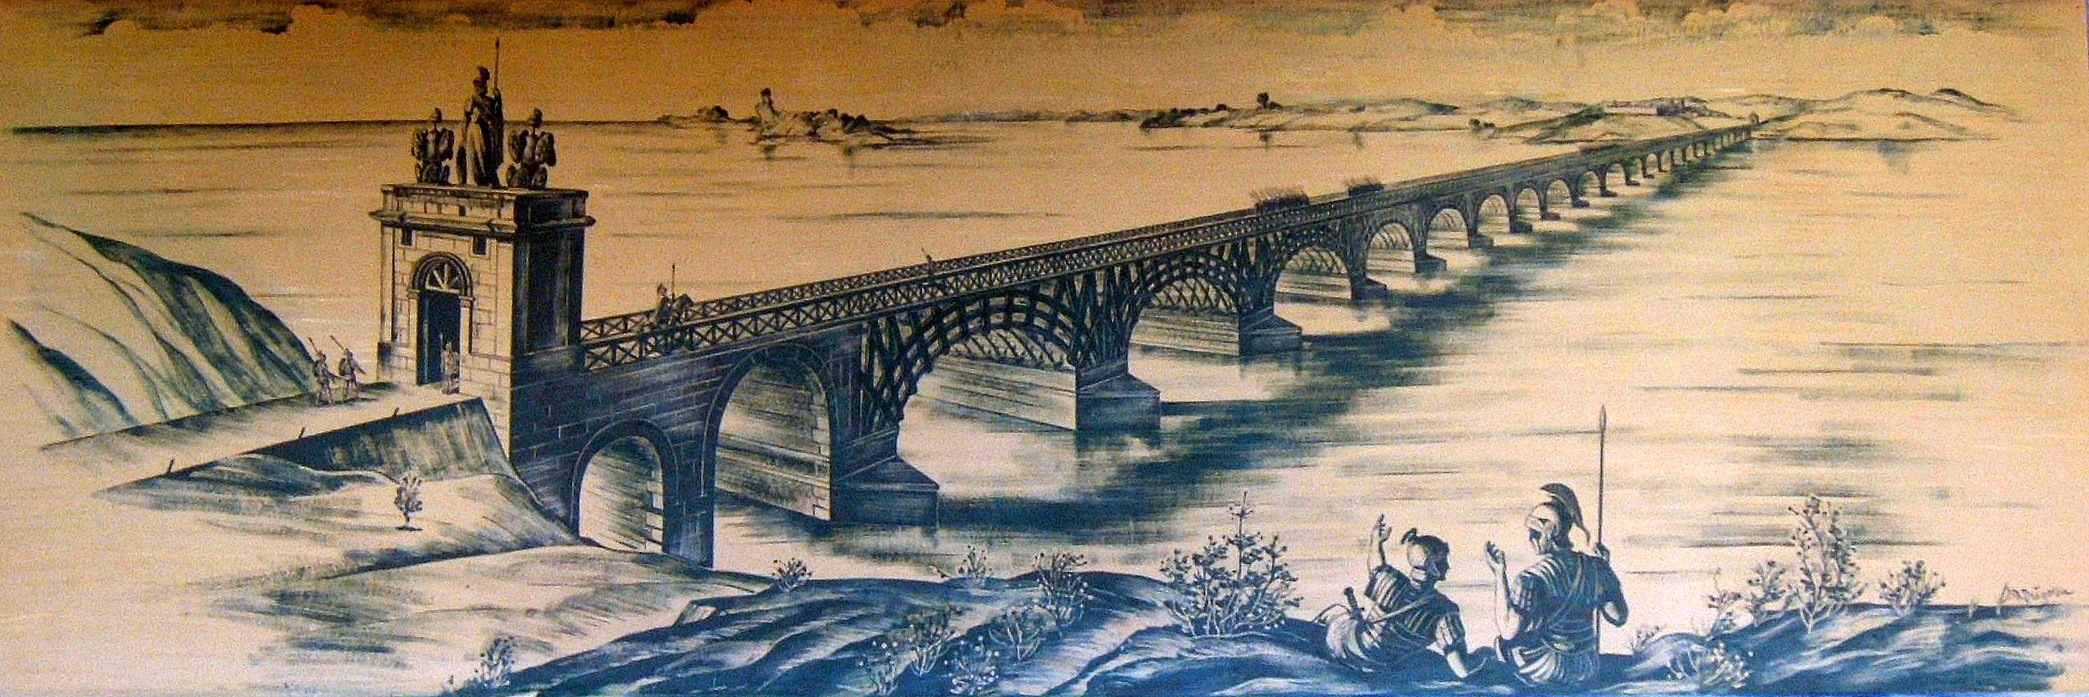 большепролетный мост Траяна